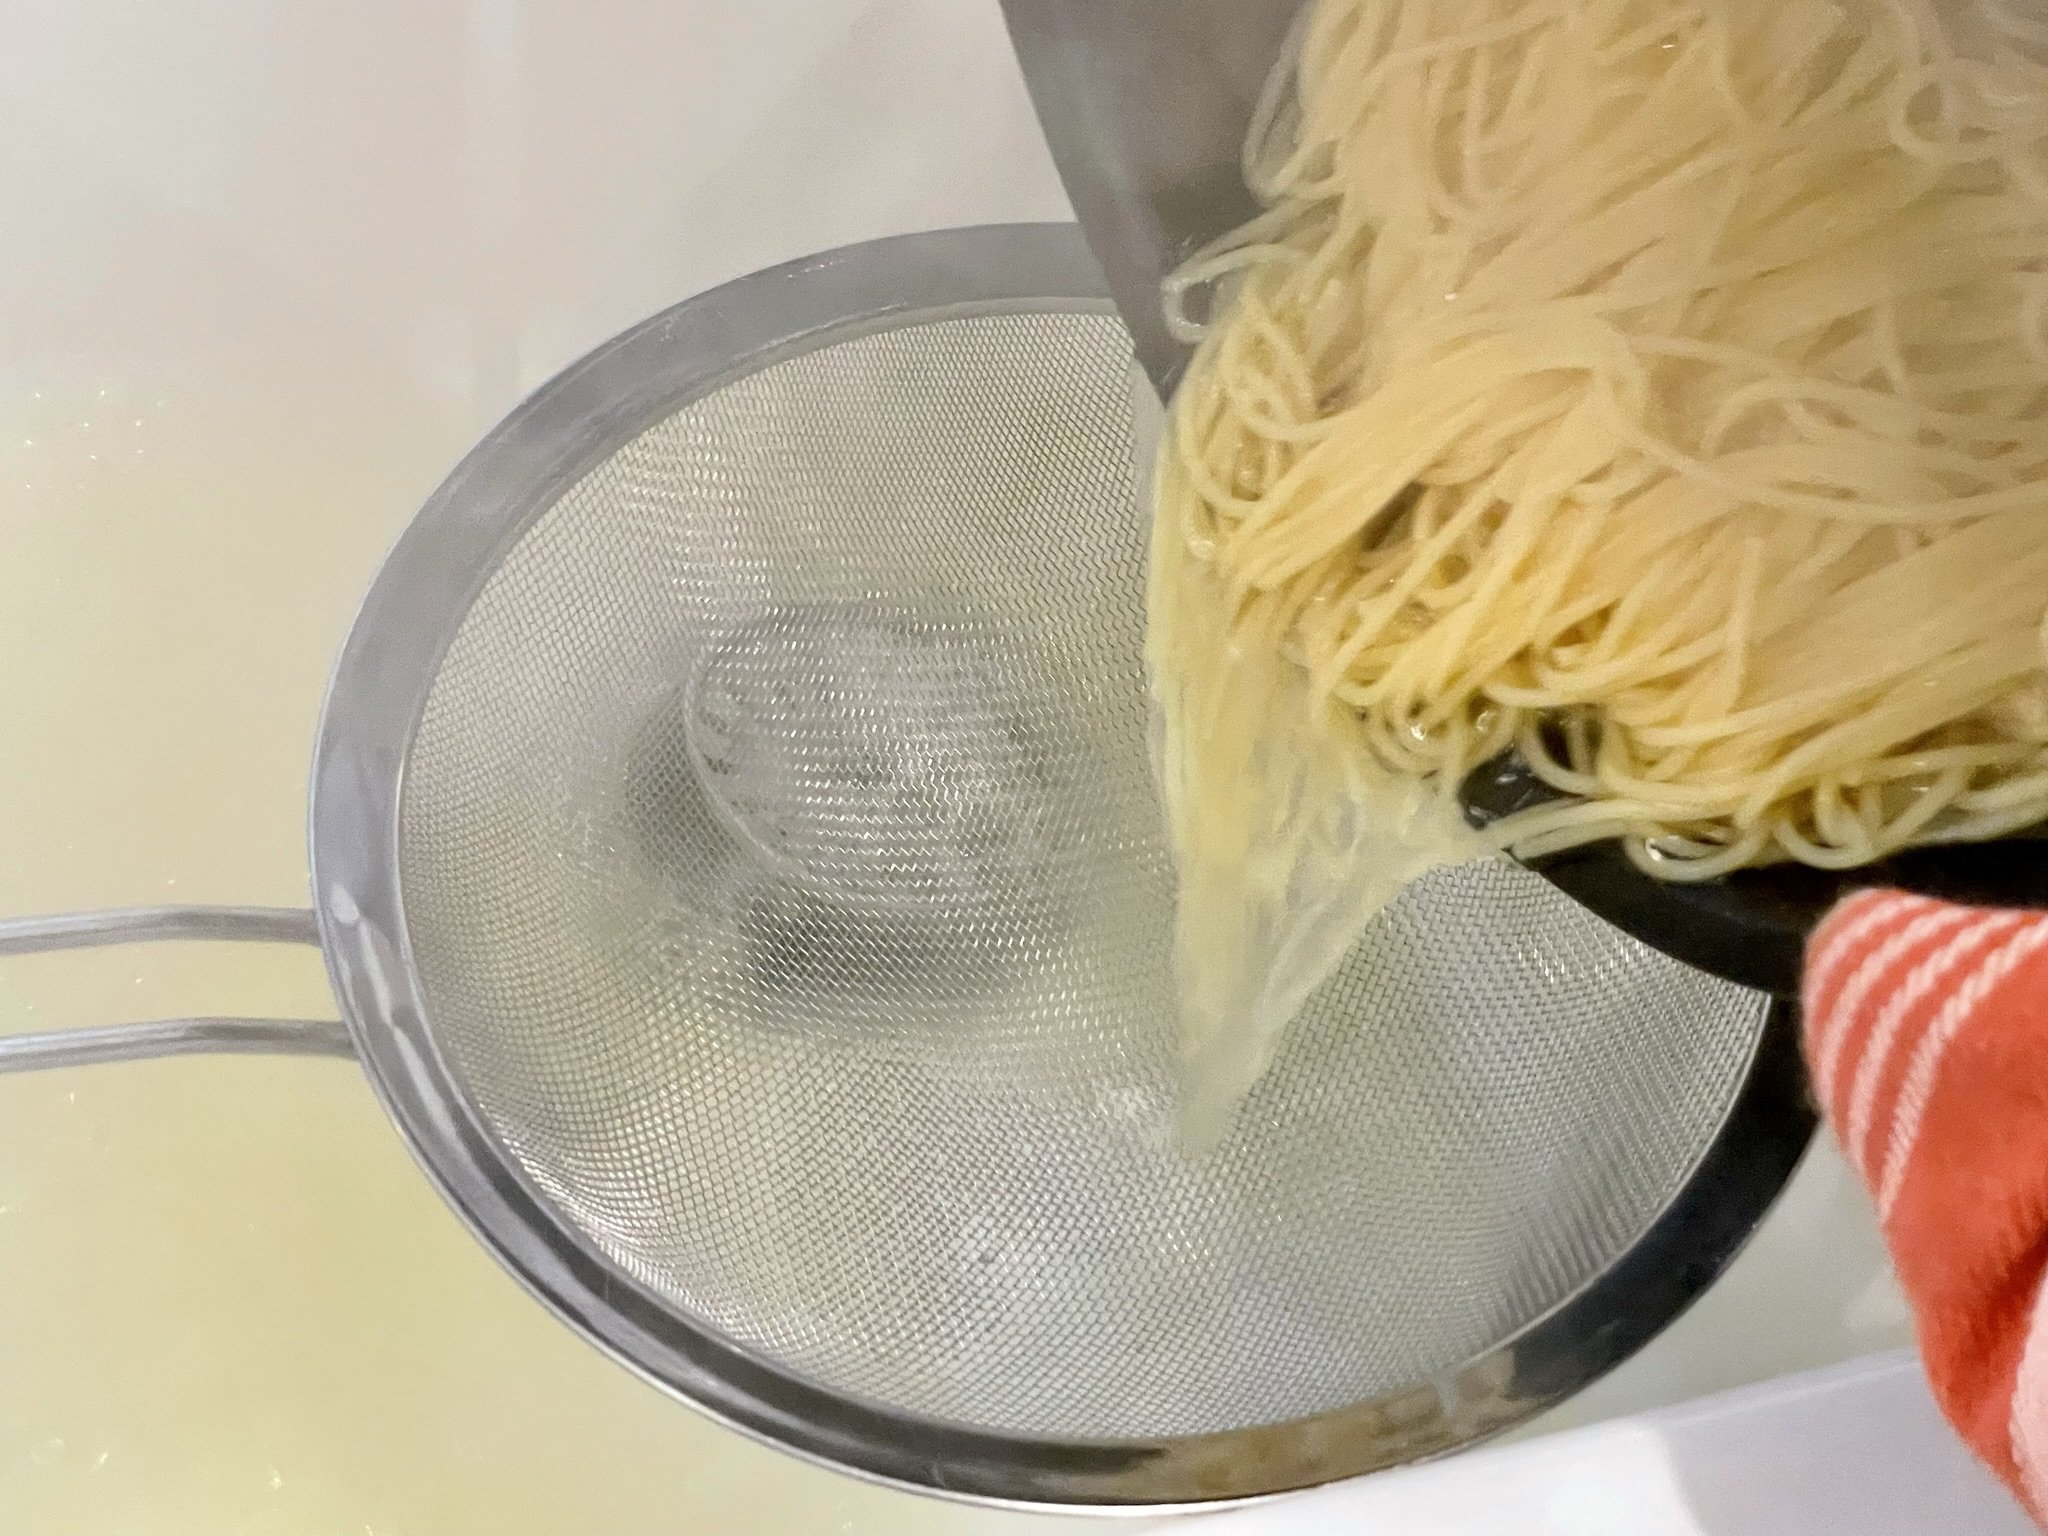 Drain pasta.